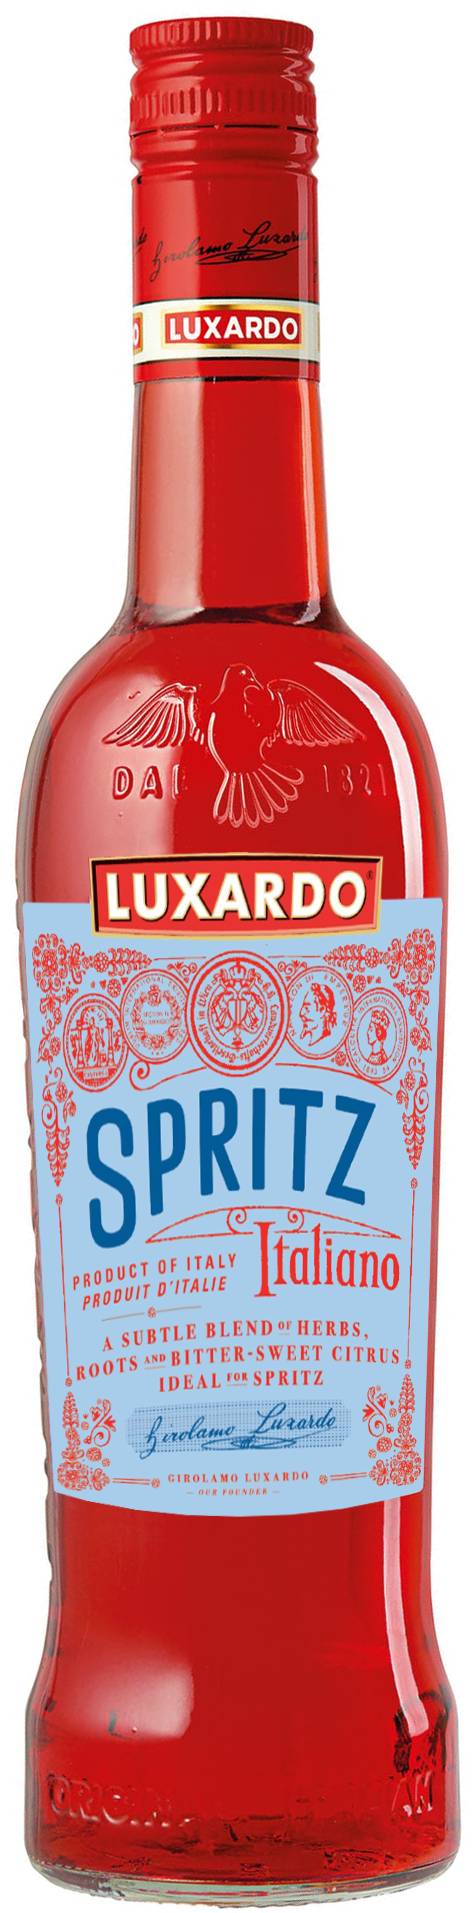 Luxardo - Spritz apéritif basique (700 ml)